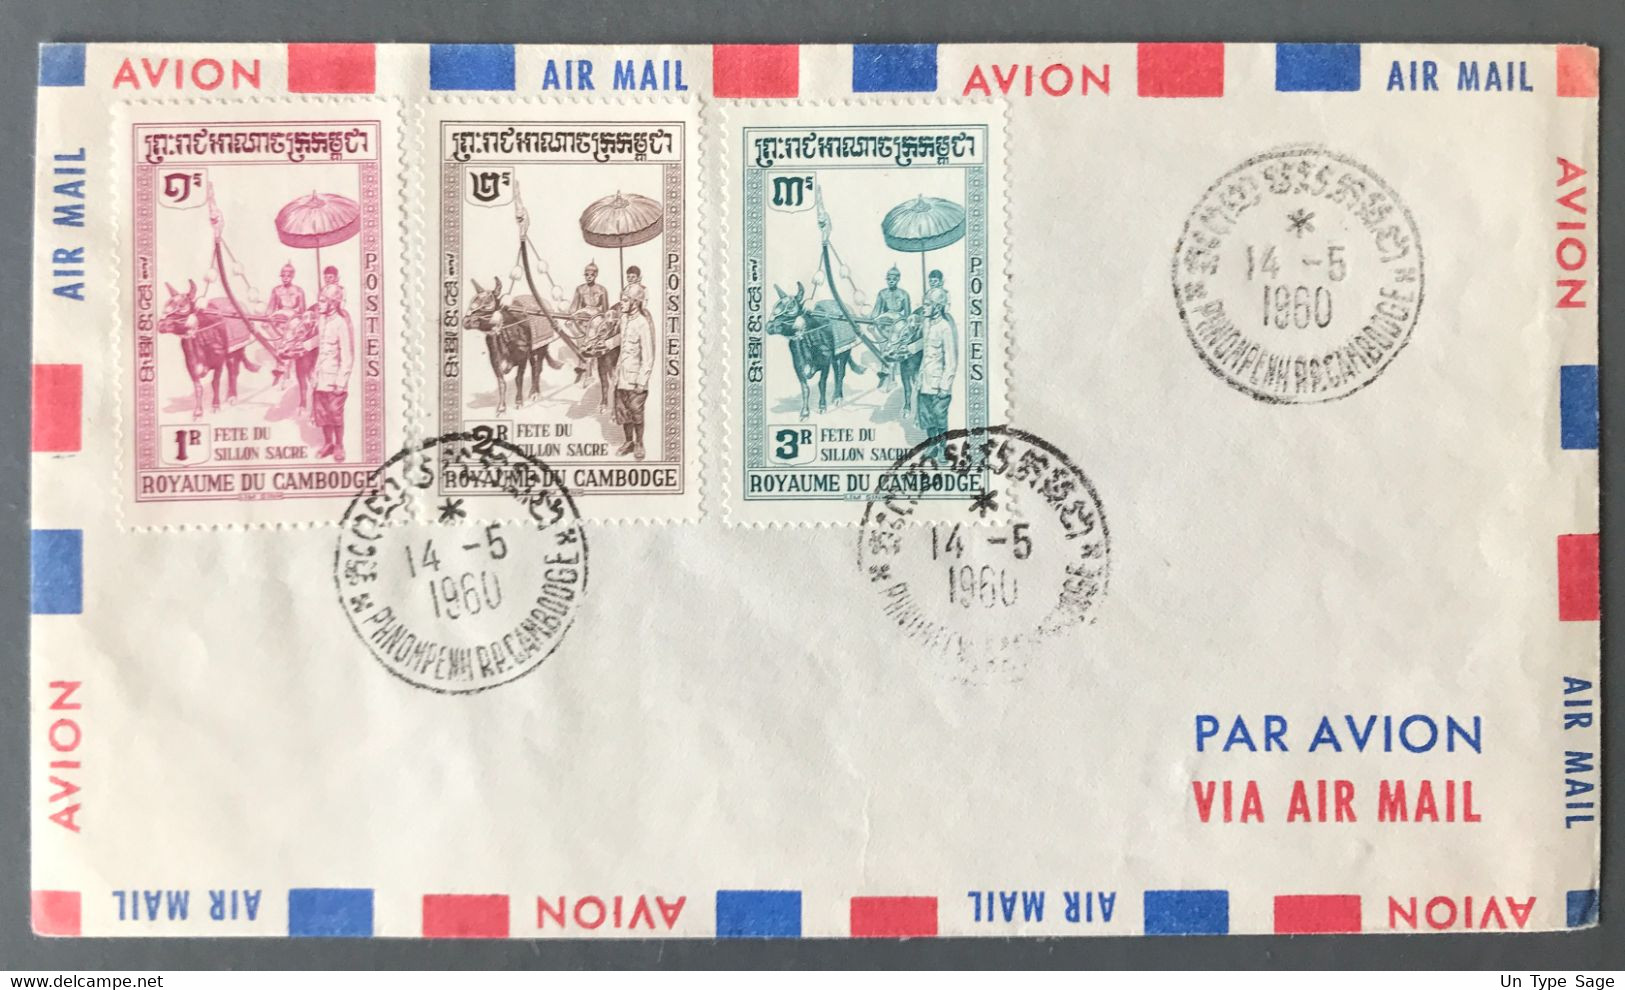 Cambodge Sur Enveloppe, Premier Jour 14.5.1960 Fête Du Sillon Sacré - (A1040) - Cambodge